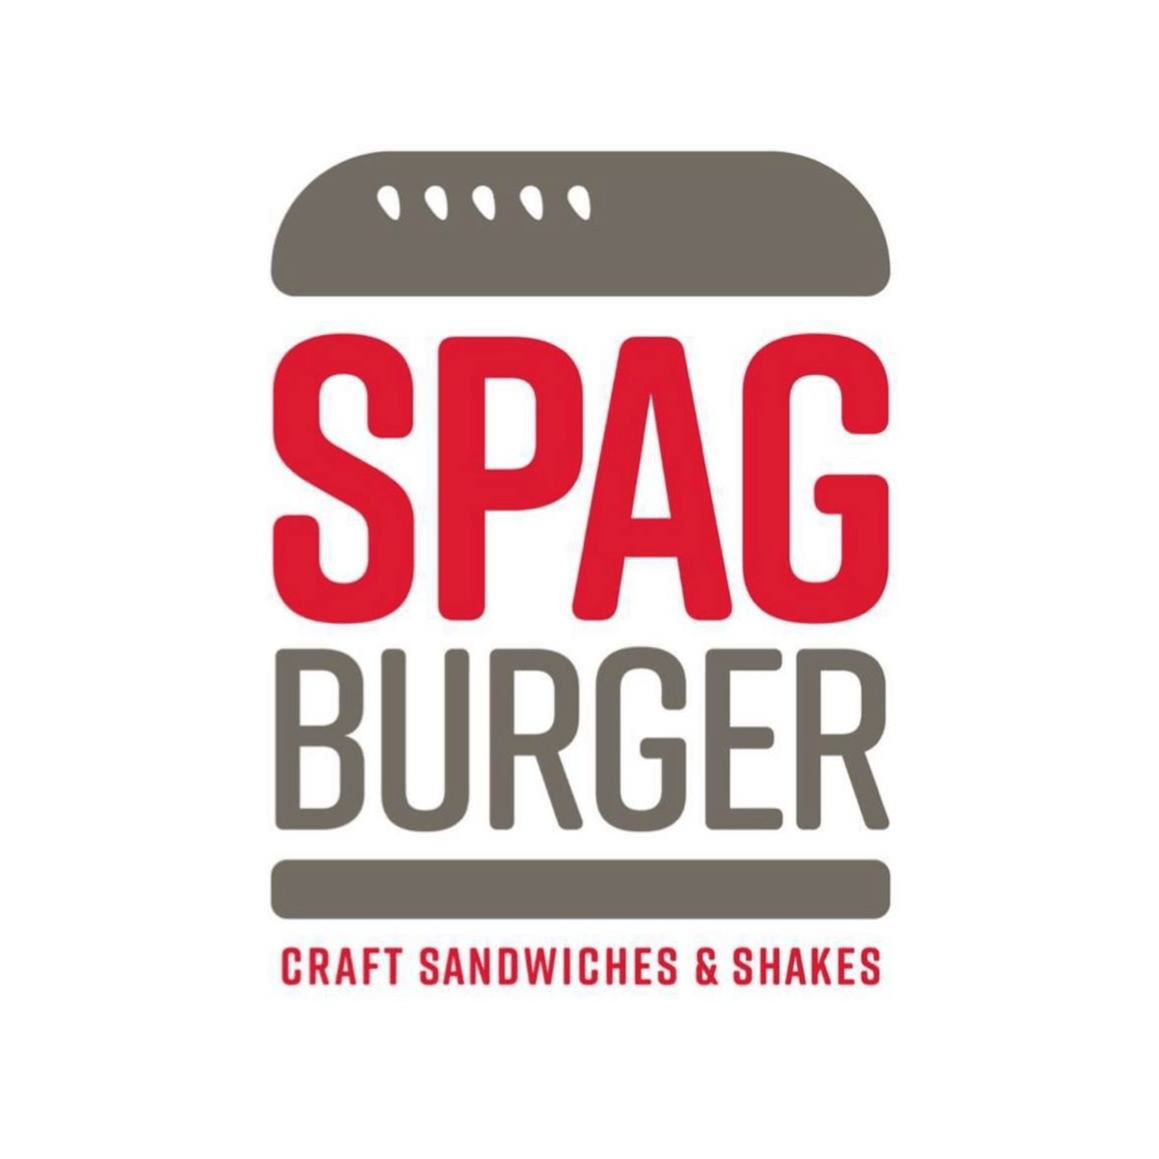 Spagburger